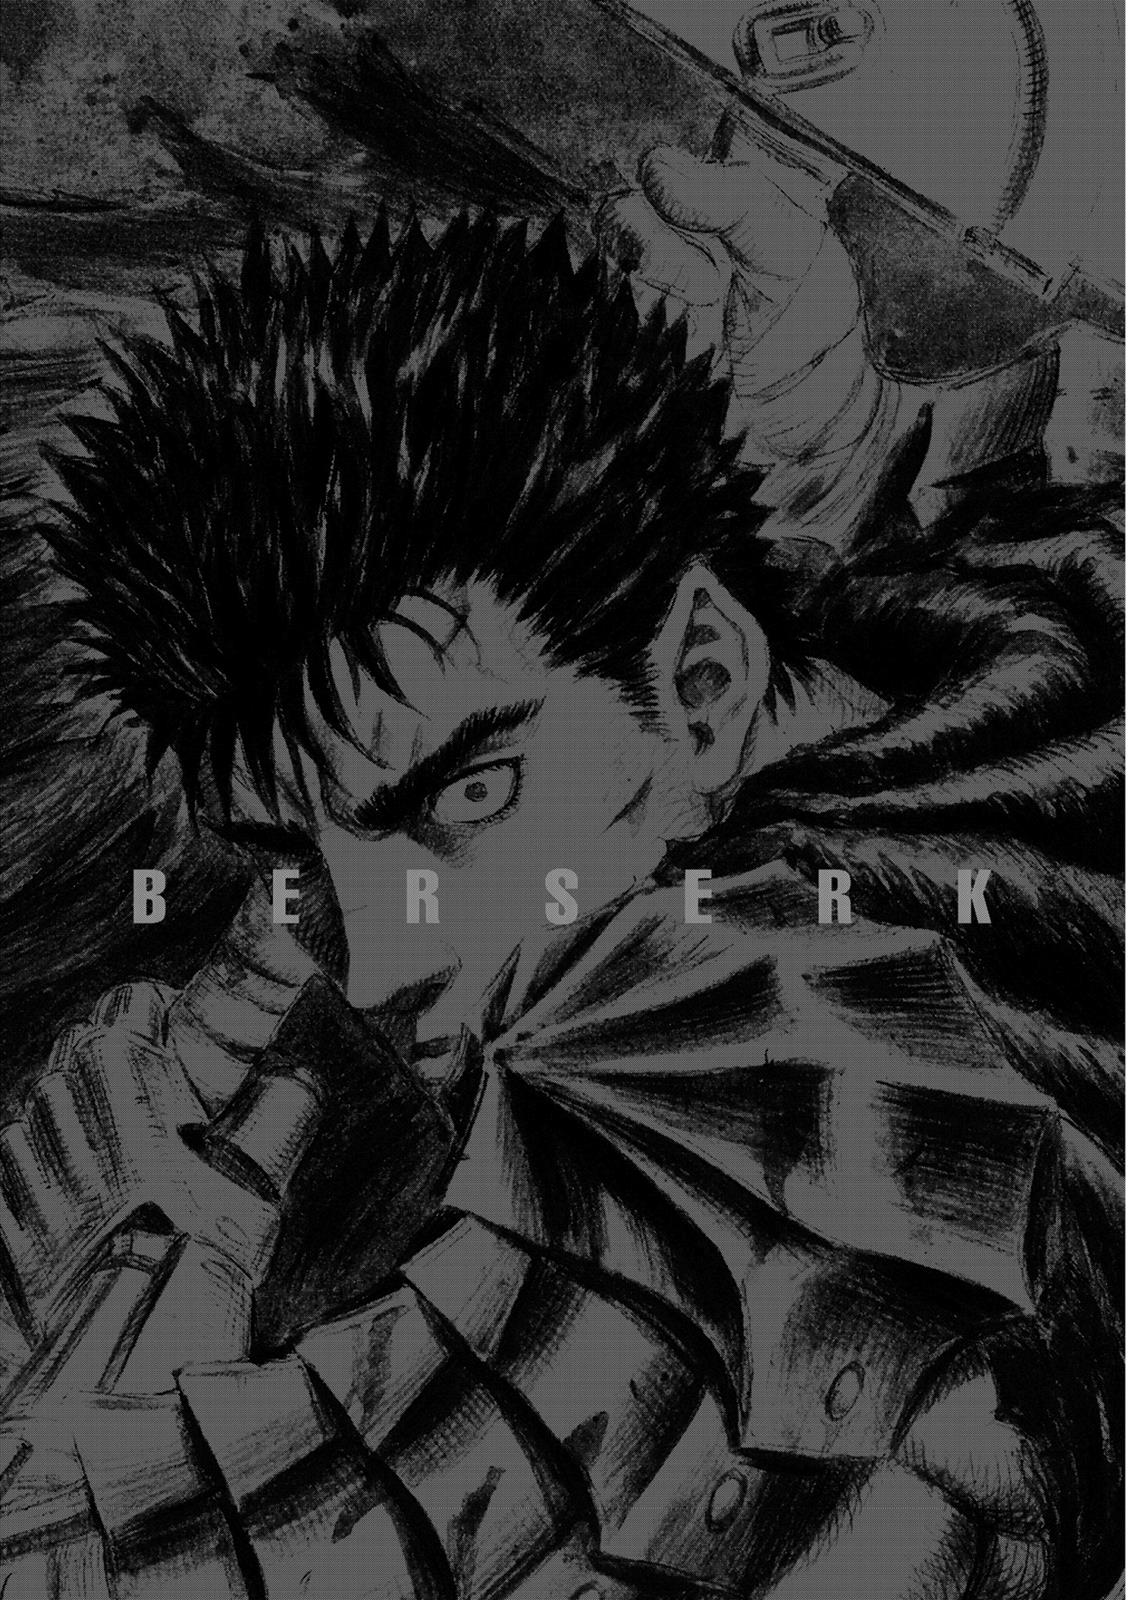 Berserk Manga Chapter 310 image 18